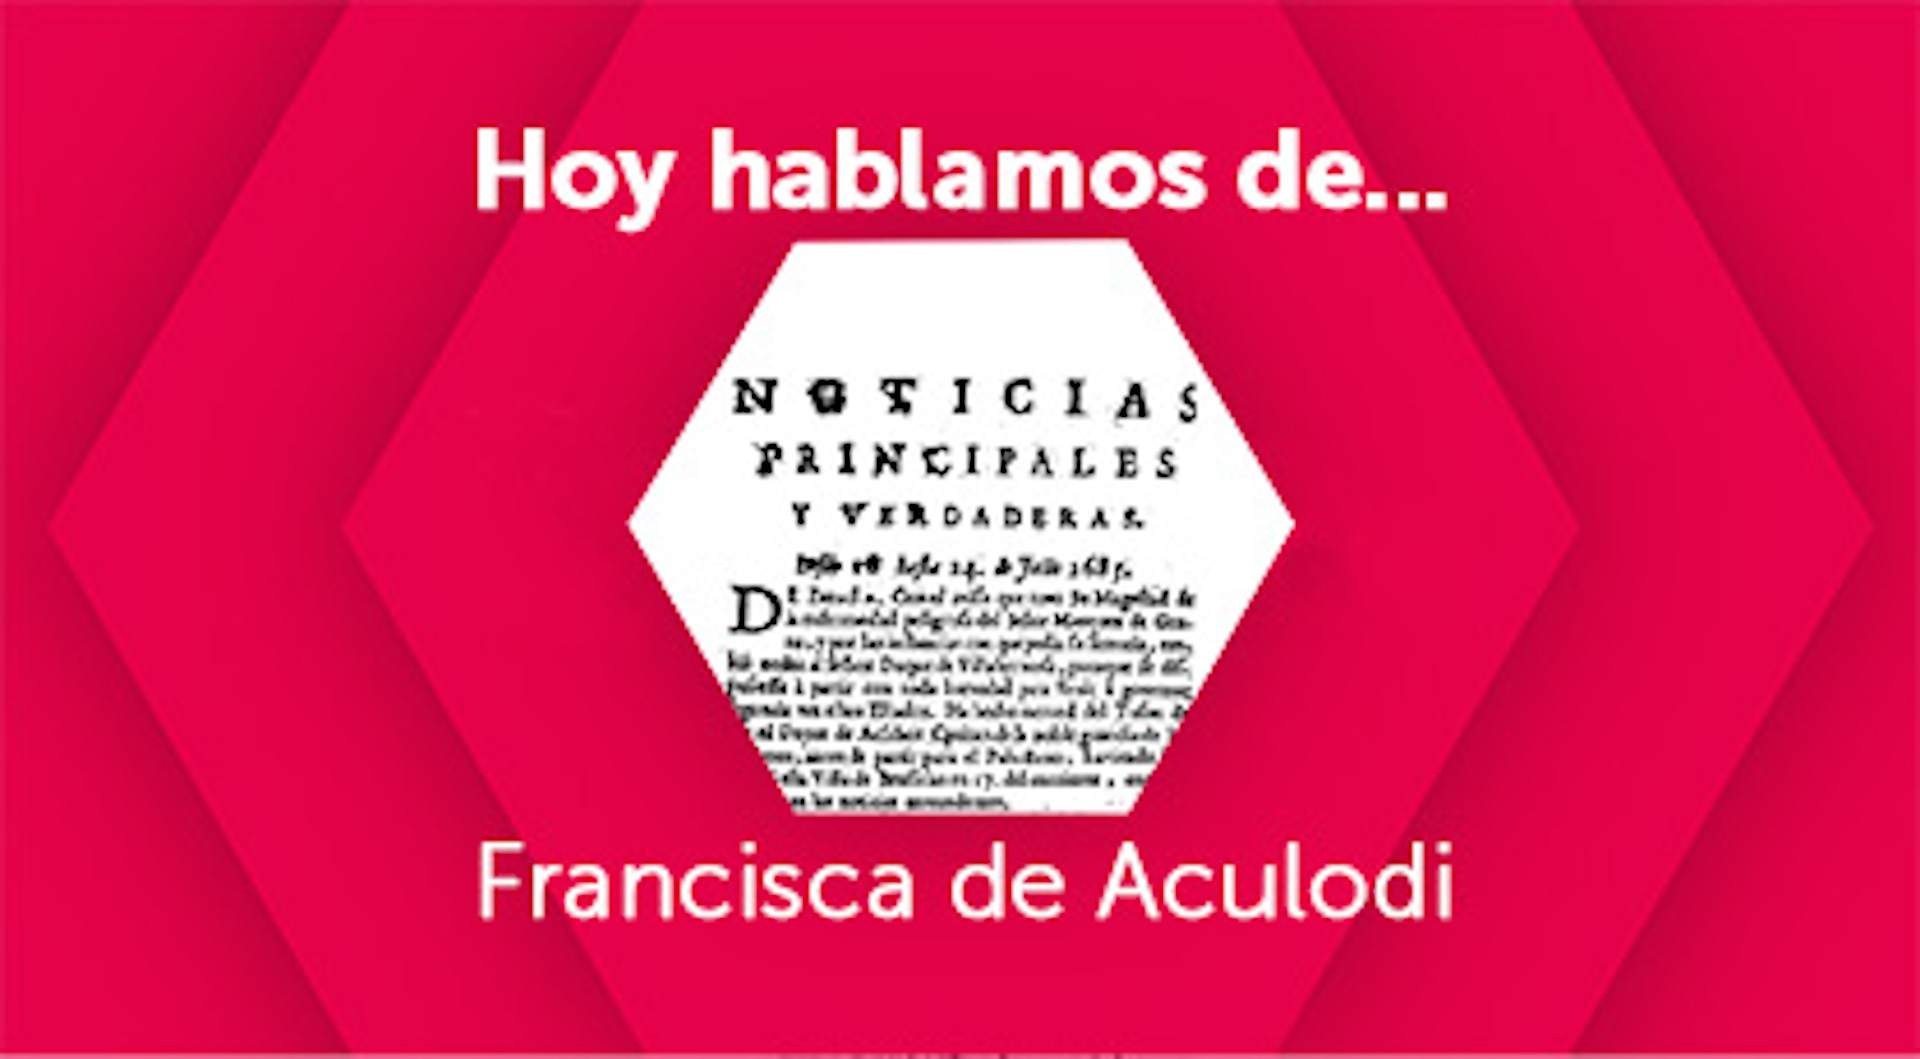 Hoy hablamos de Francisca de Aculodi